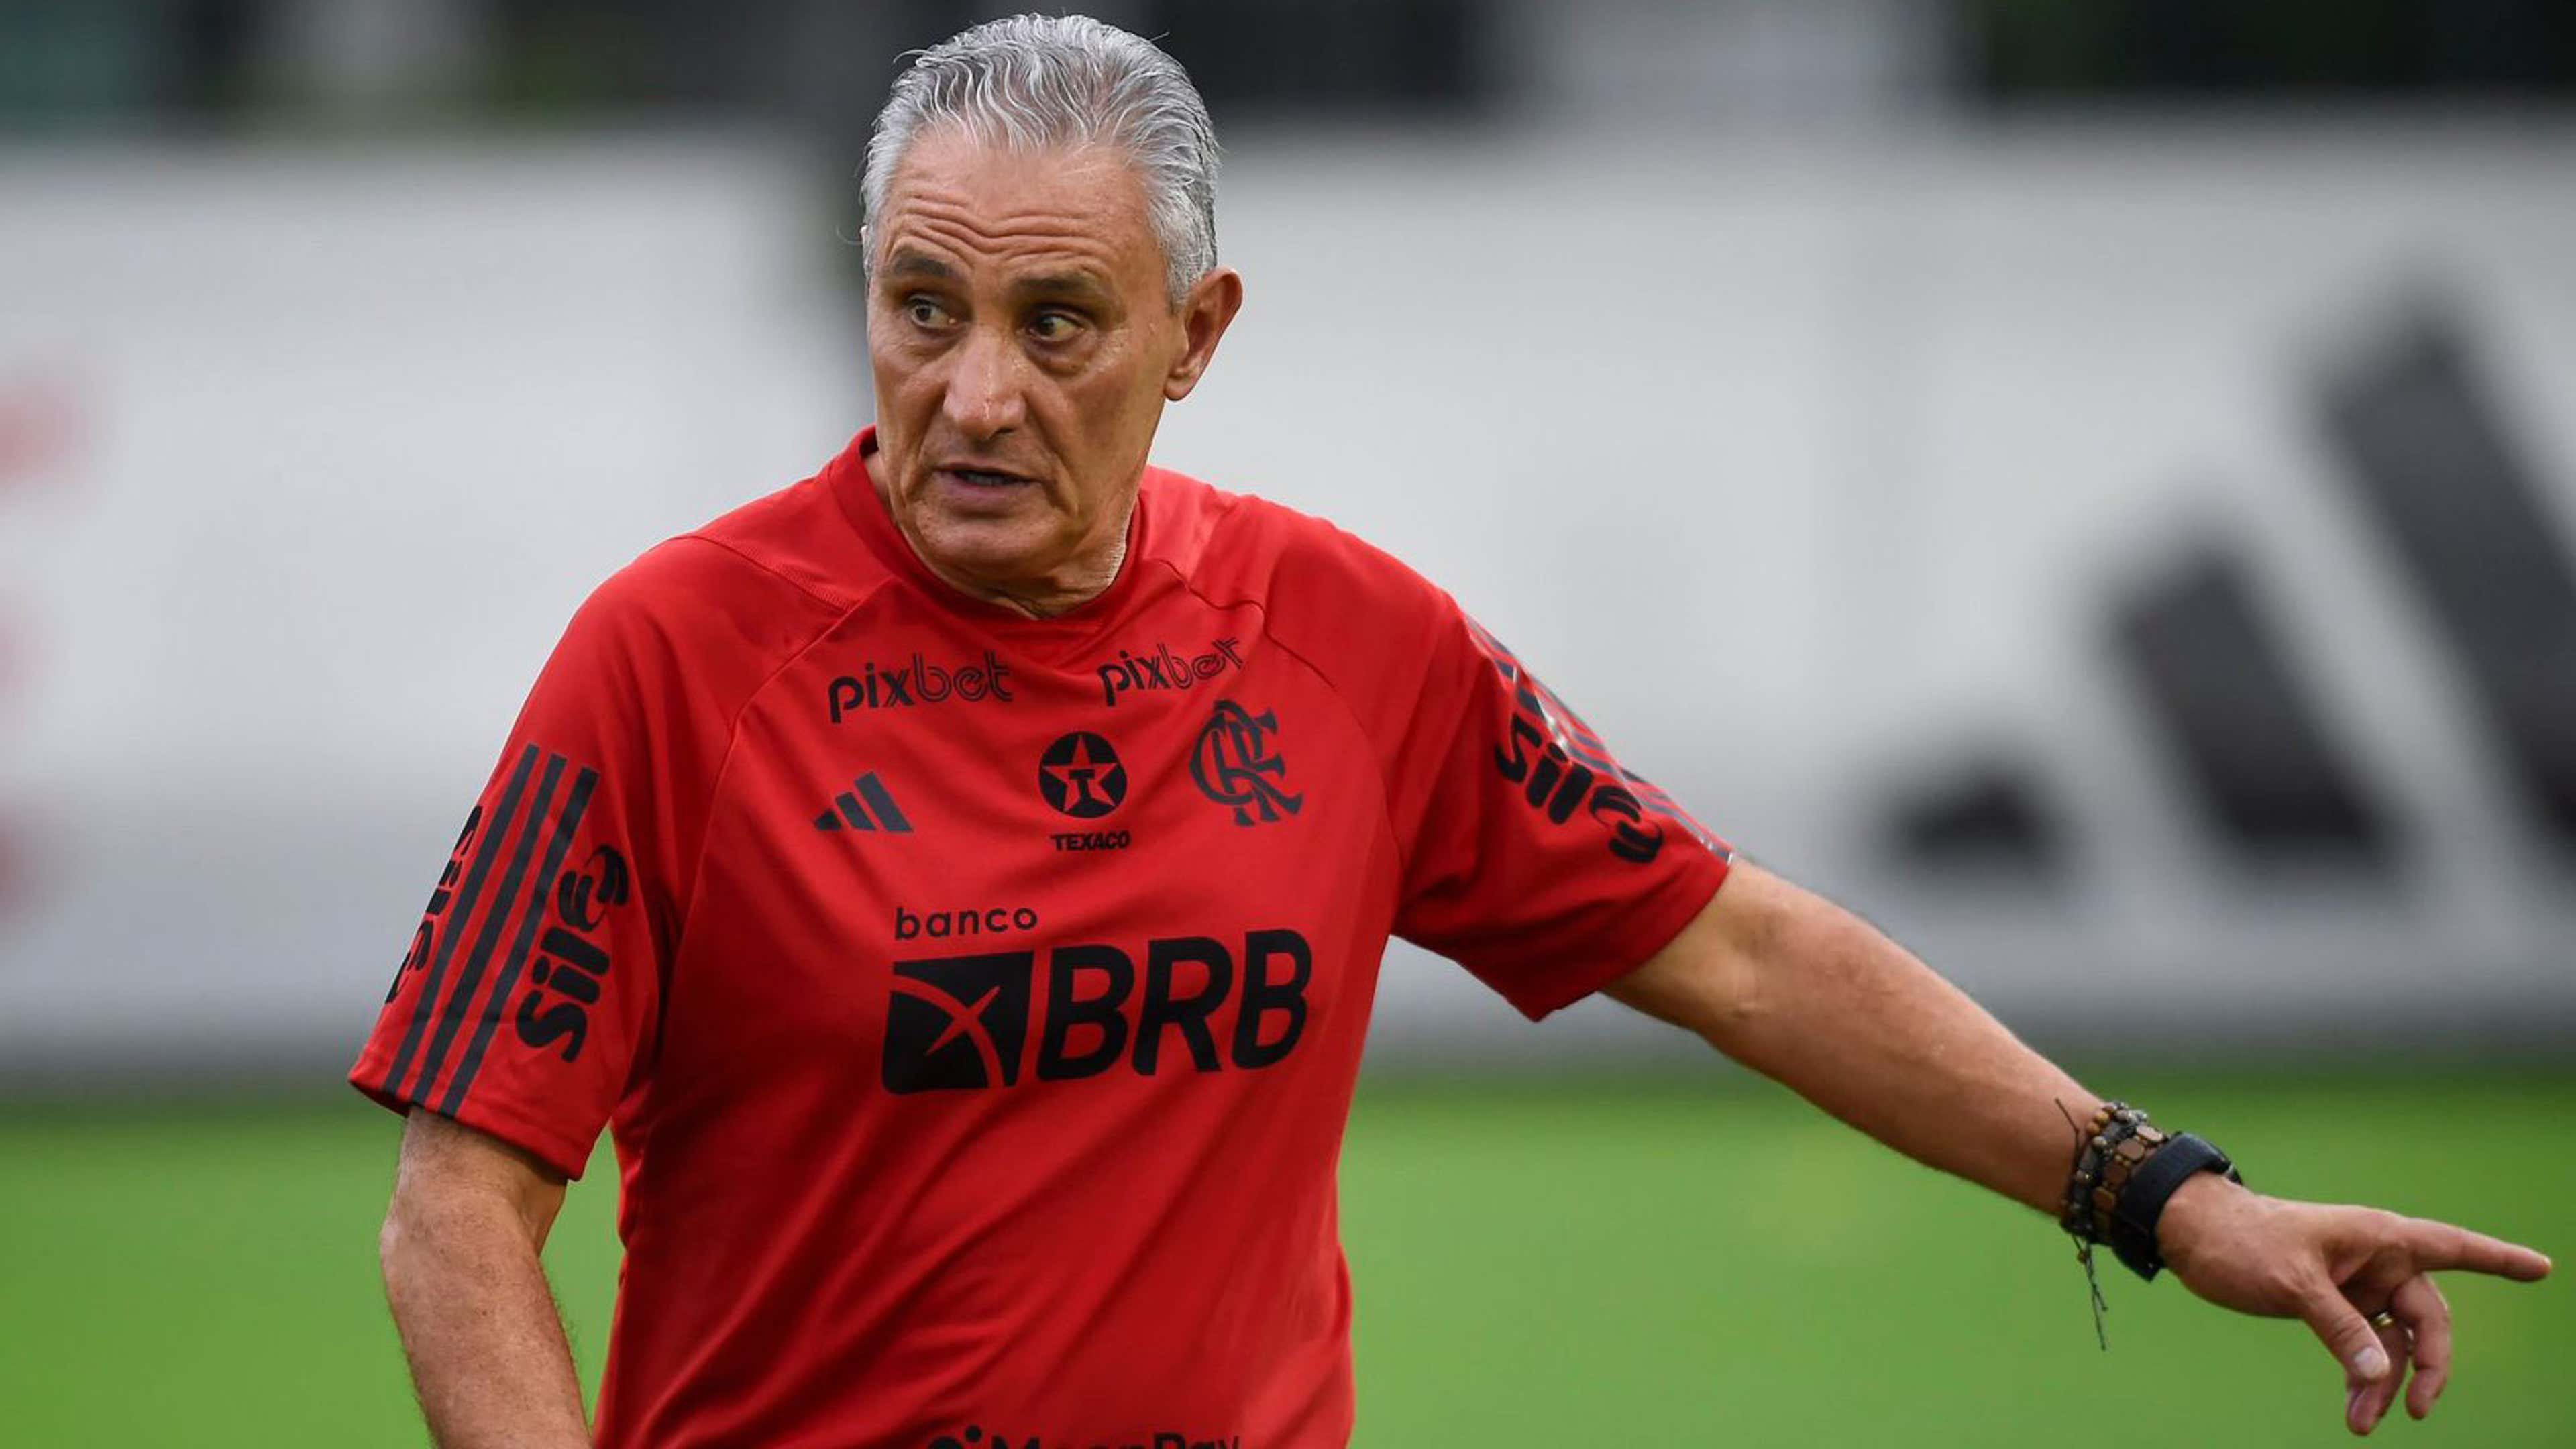 O Flamengo vai jogar o Campeonato Carioca com o time principal? Quem viaja  para a Flórida?